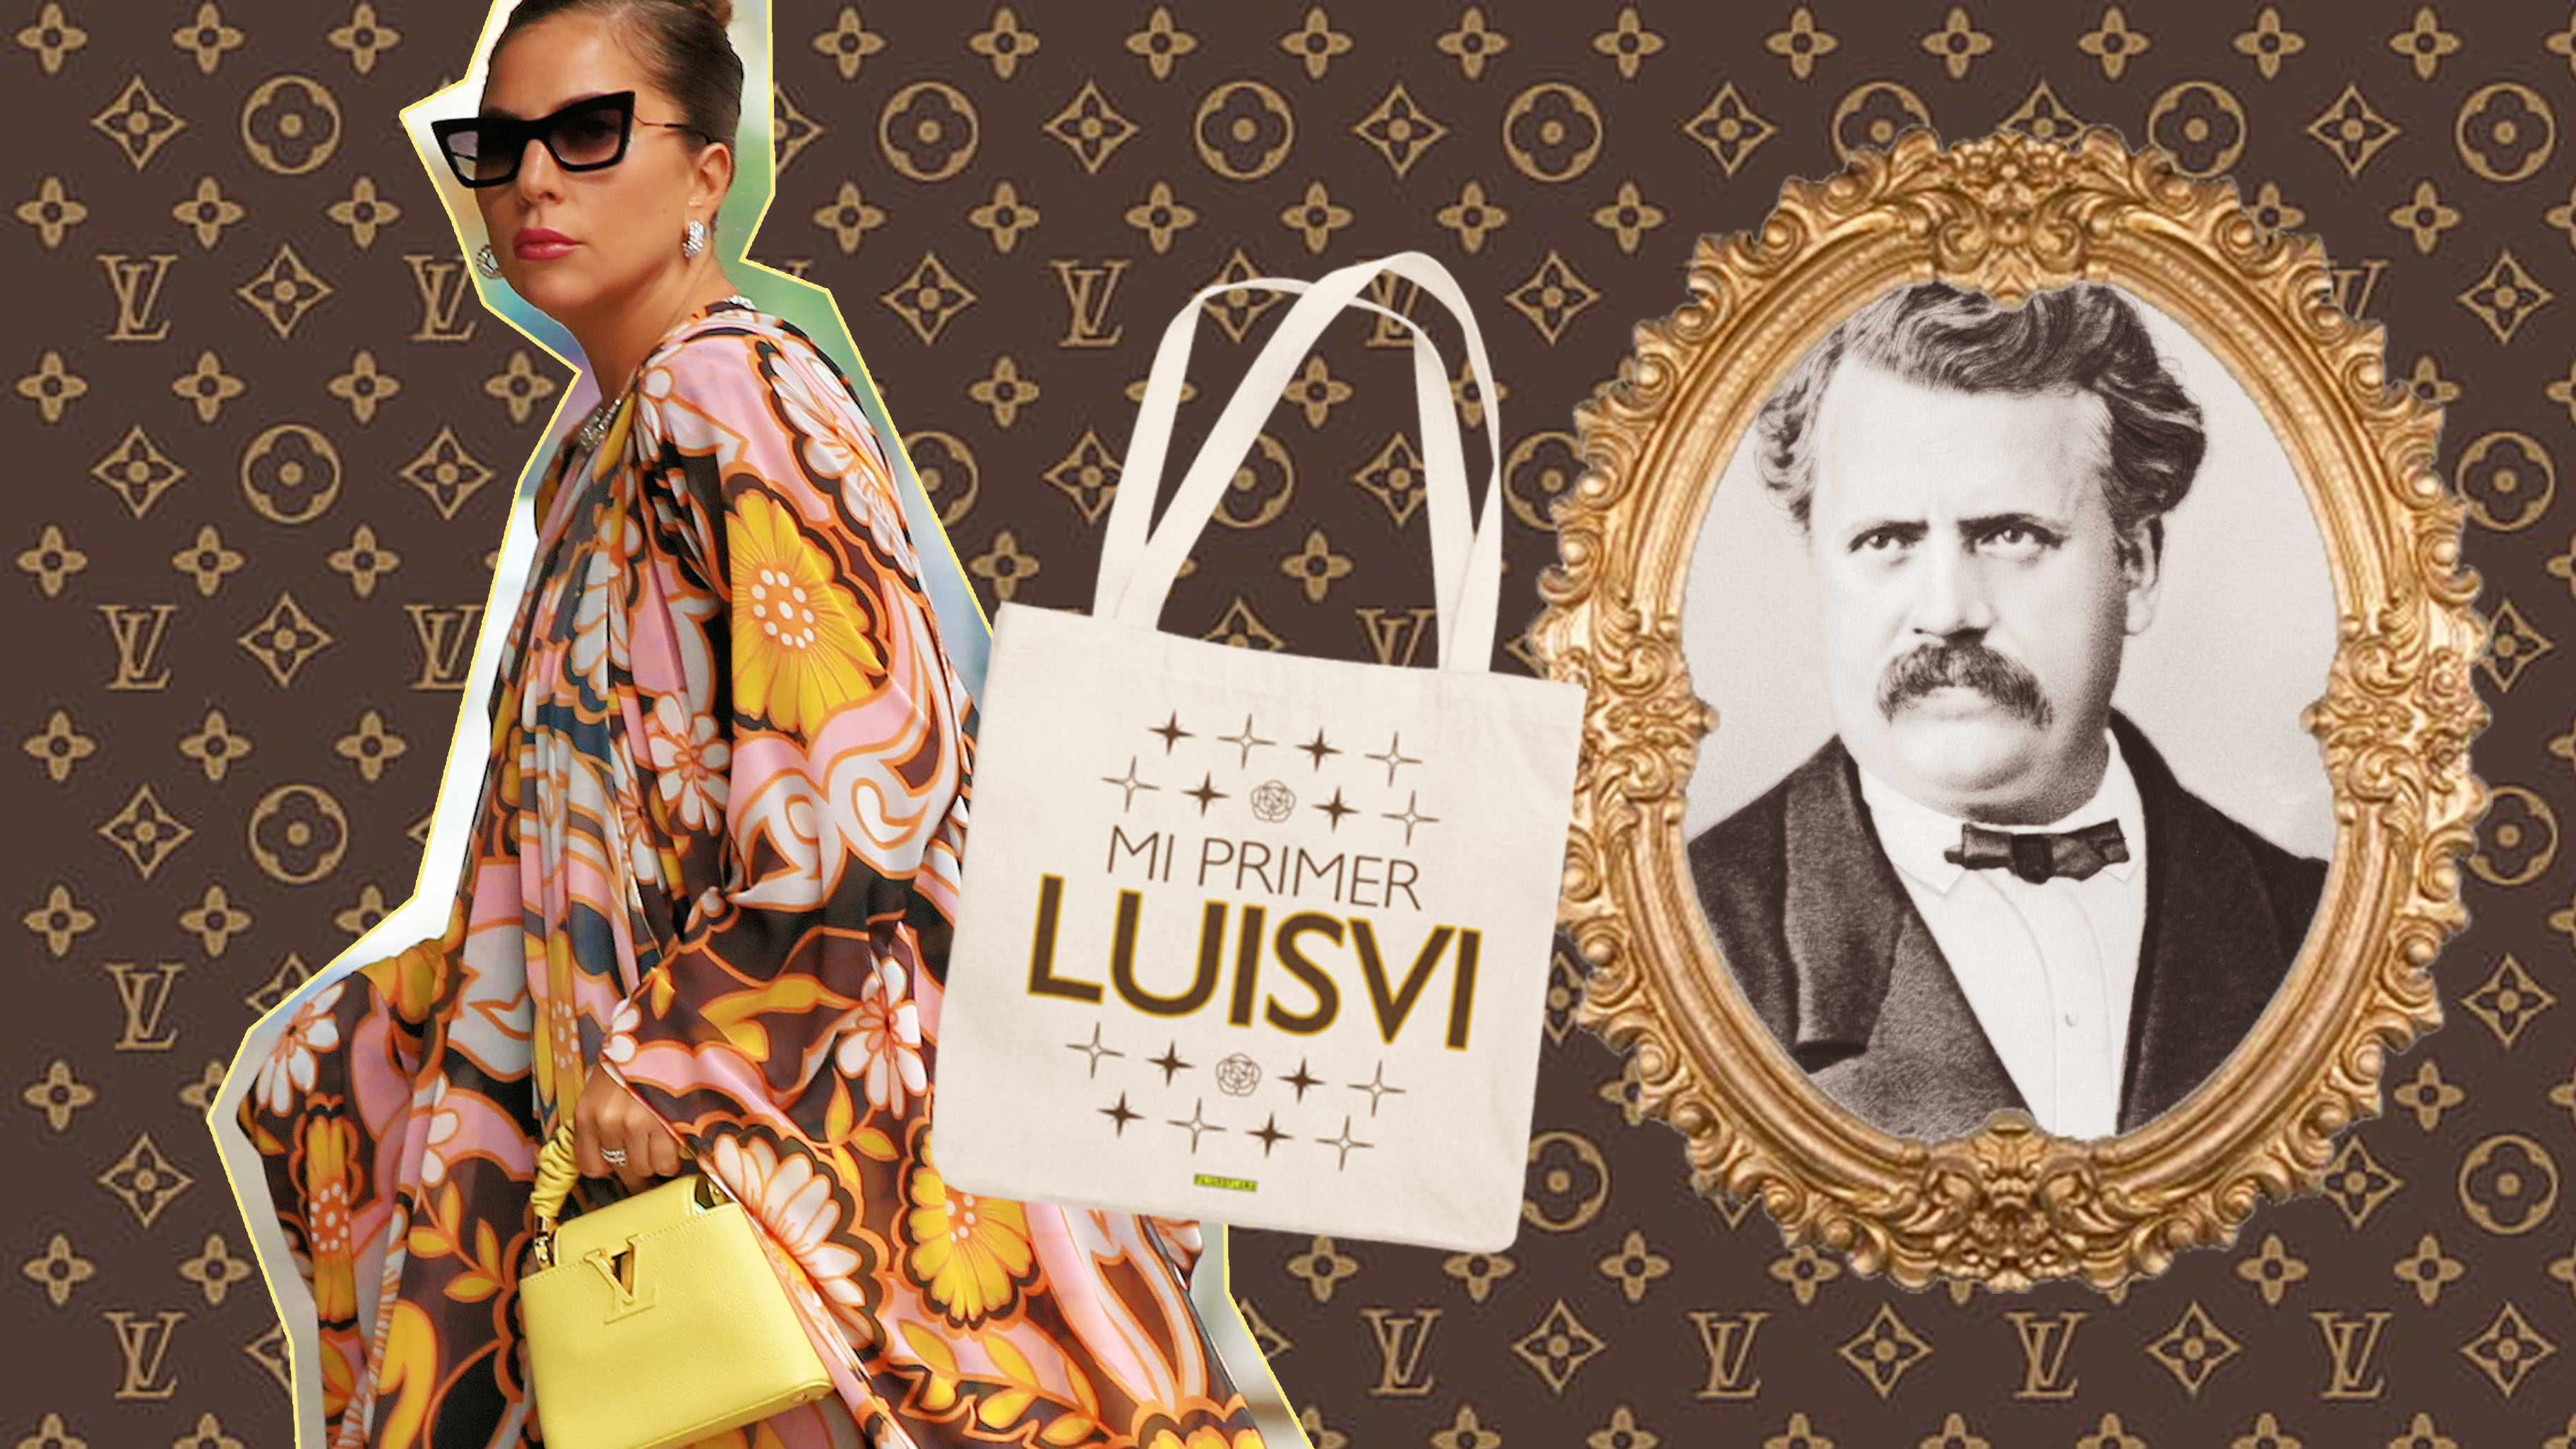 La verdadera historia de Louis Vuitton, el hombre que se convirtió